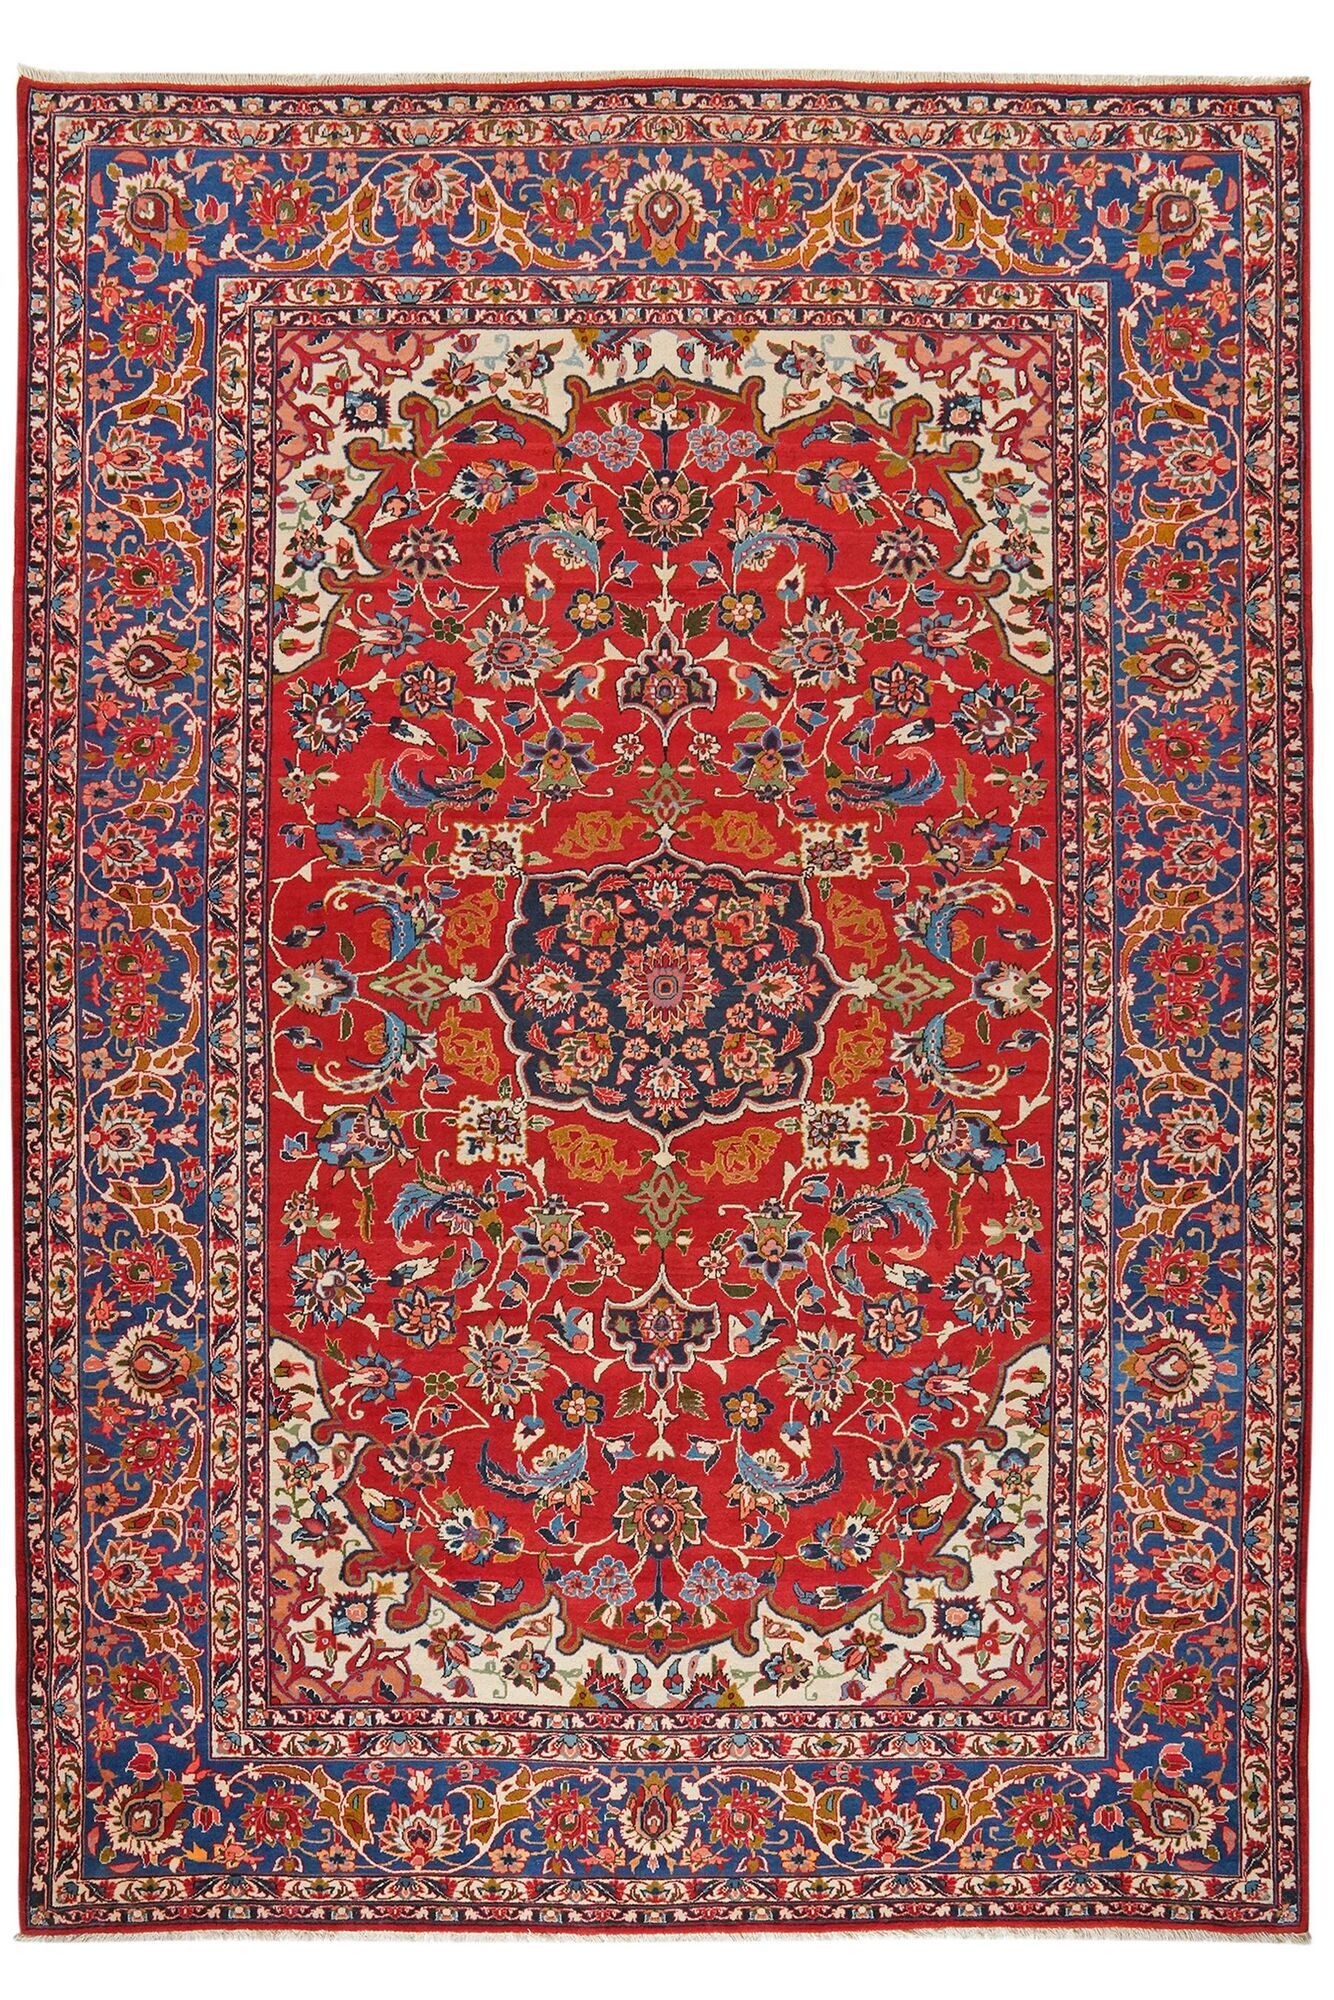 Annodato a mano. Provenienza: Persia / Iran Isfahan di seta ordito Tappeto 228x326